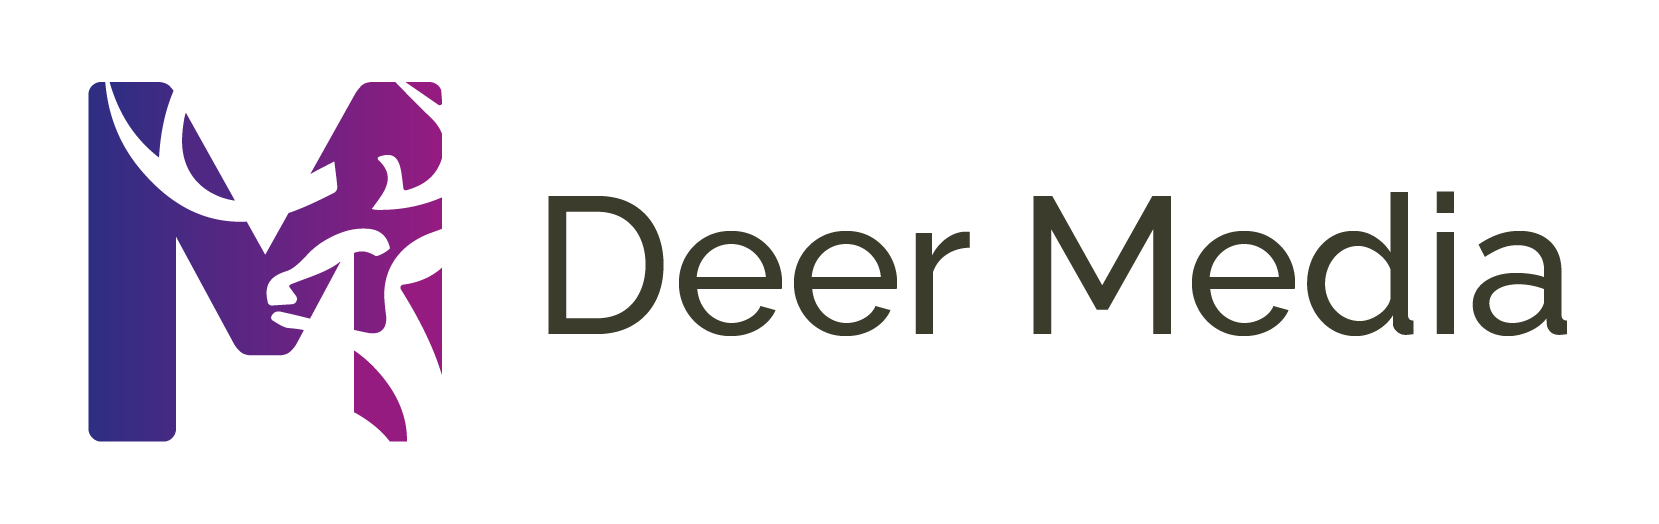 Deer Media